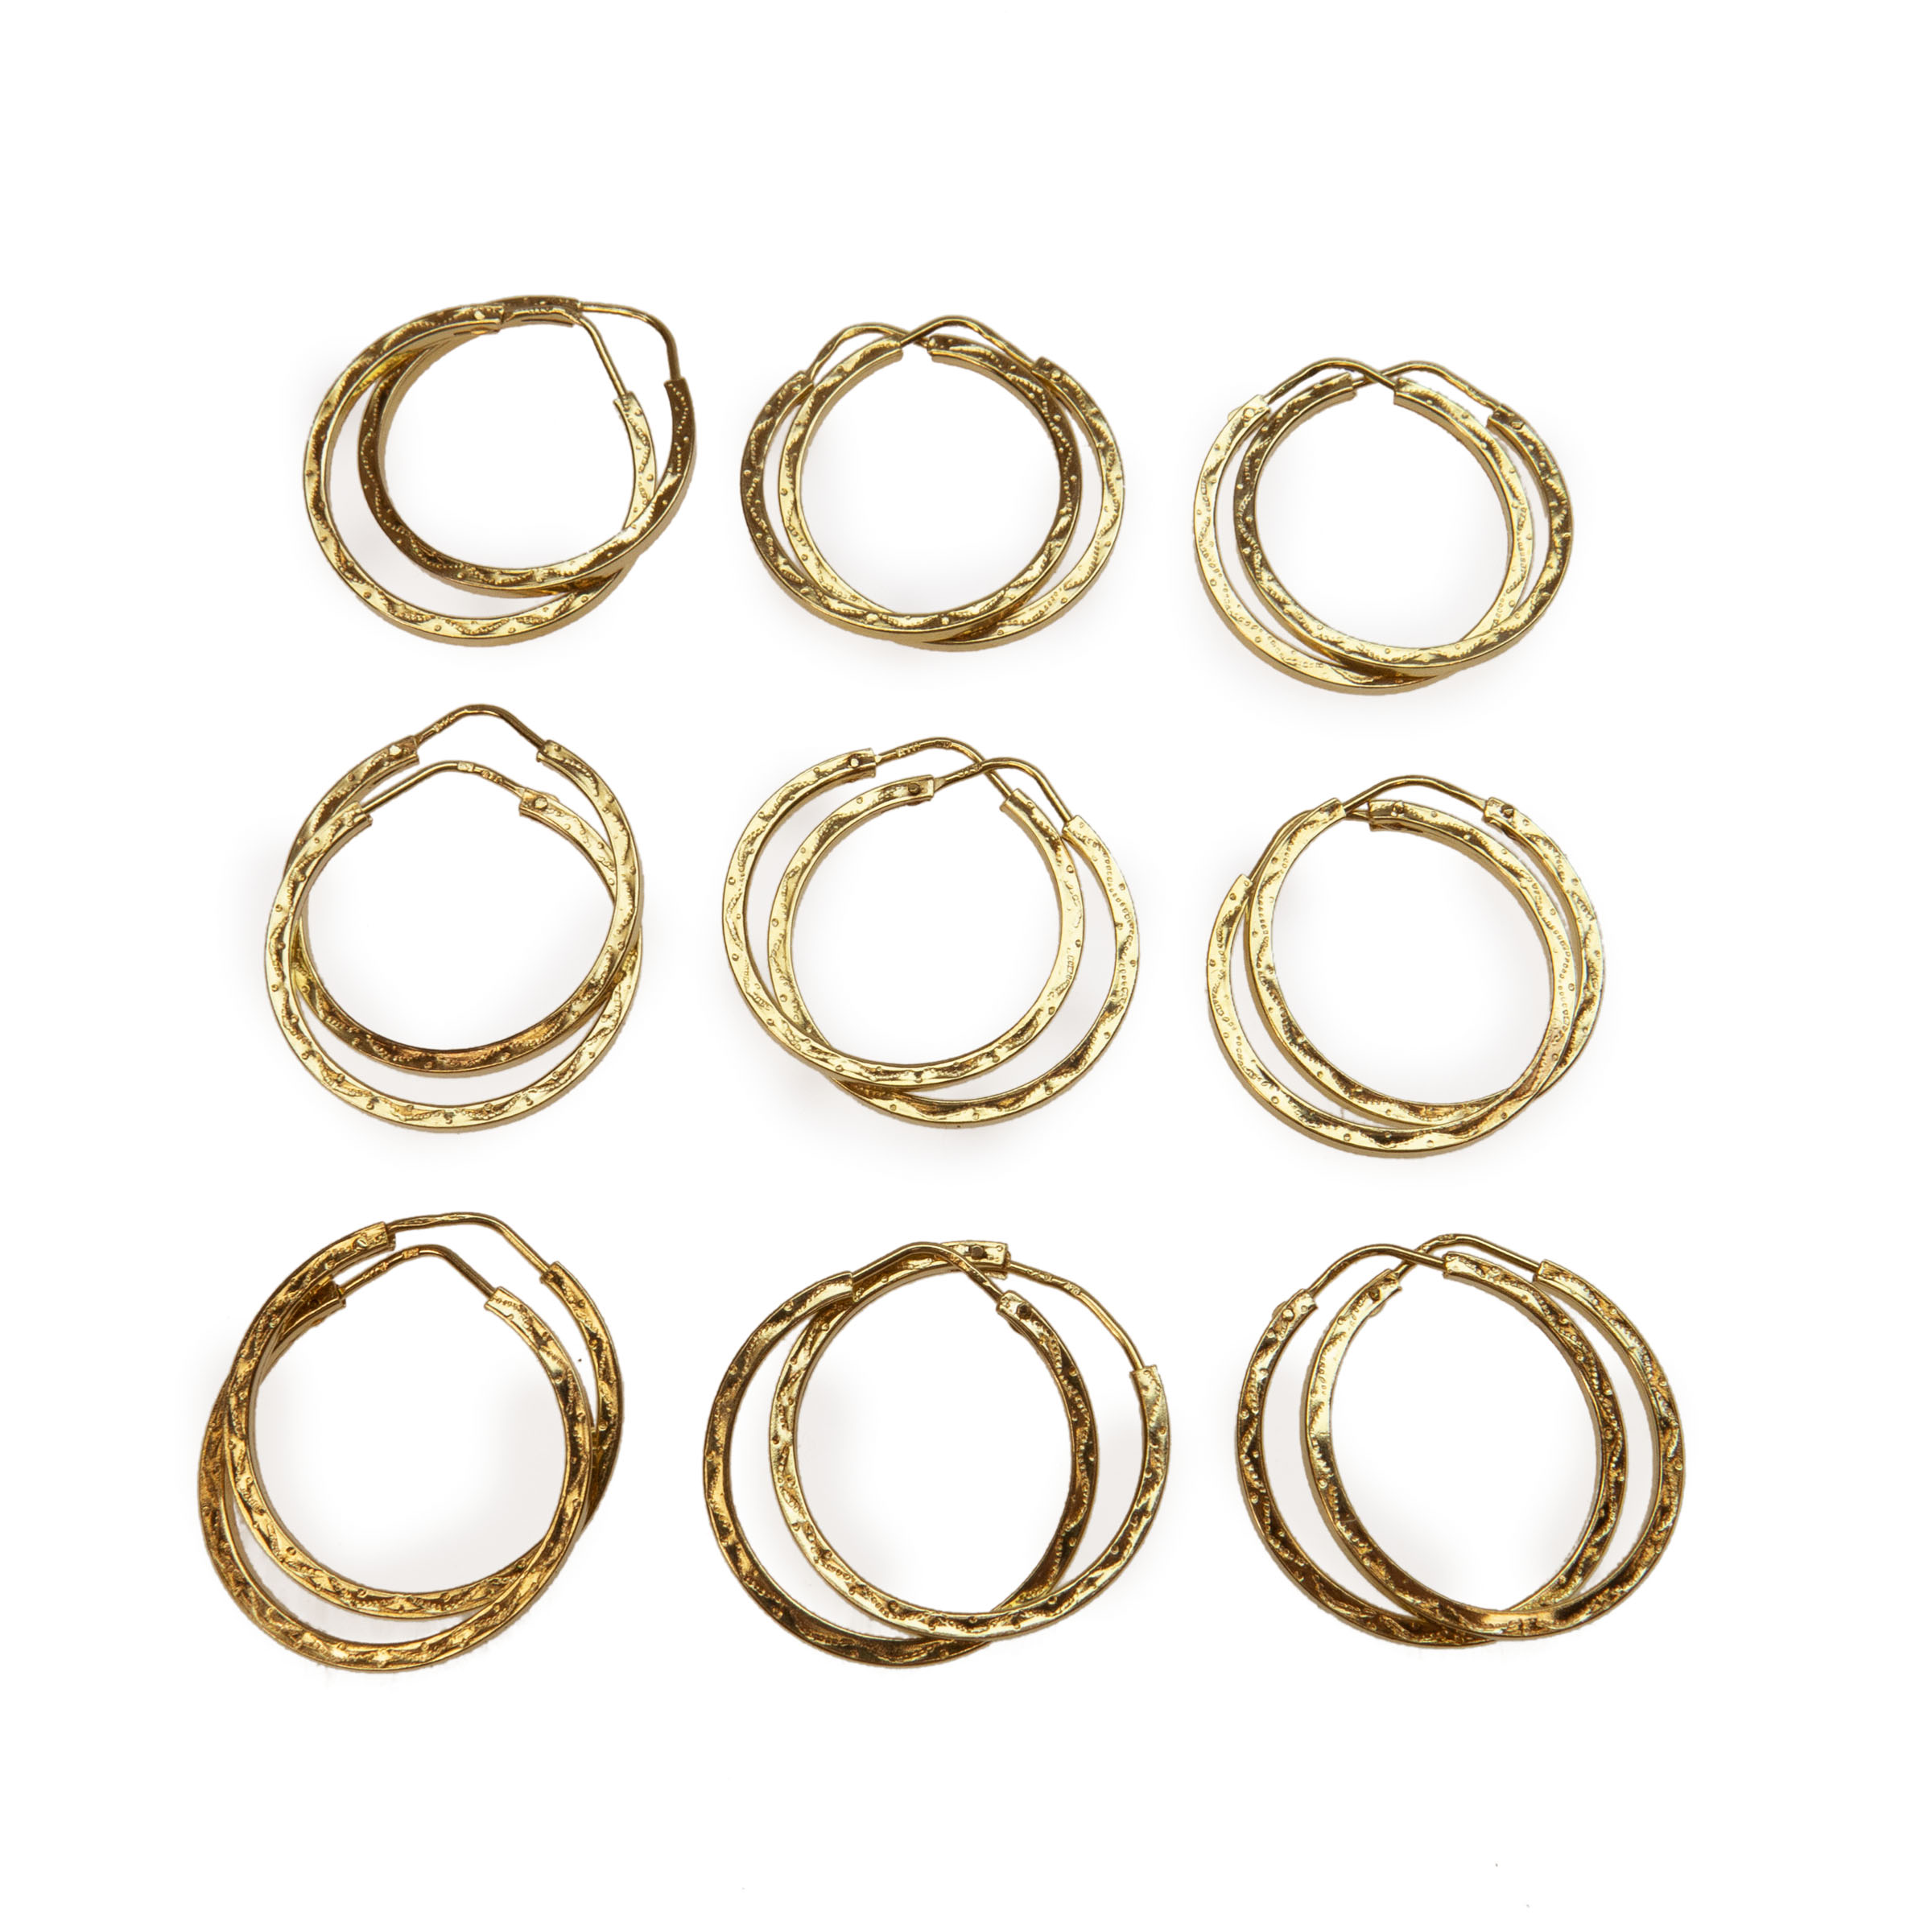 9 x Pairs Of 18K Yellow Gold Hoop Earrings